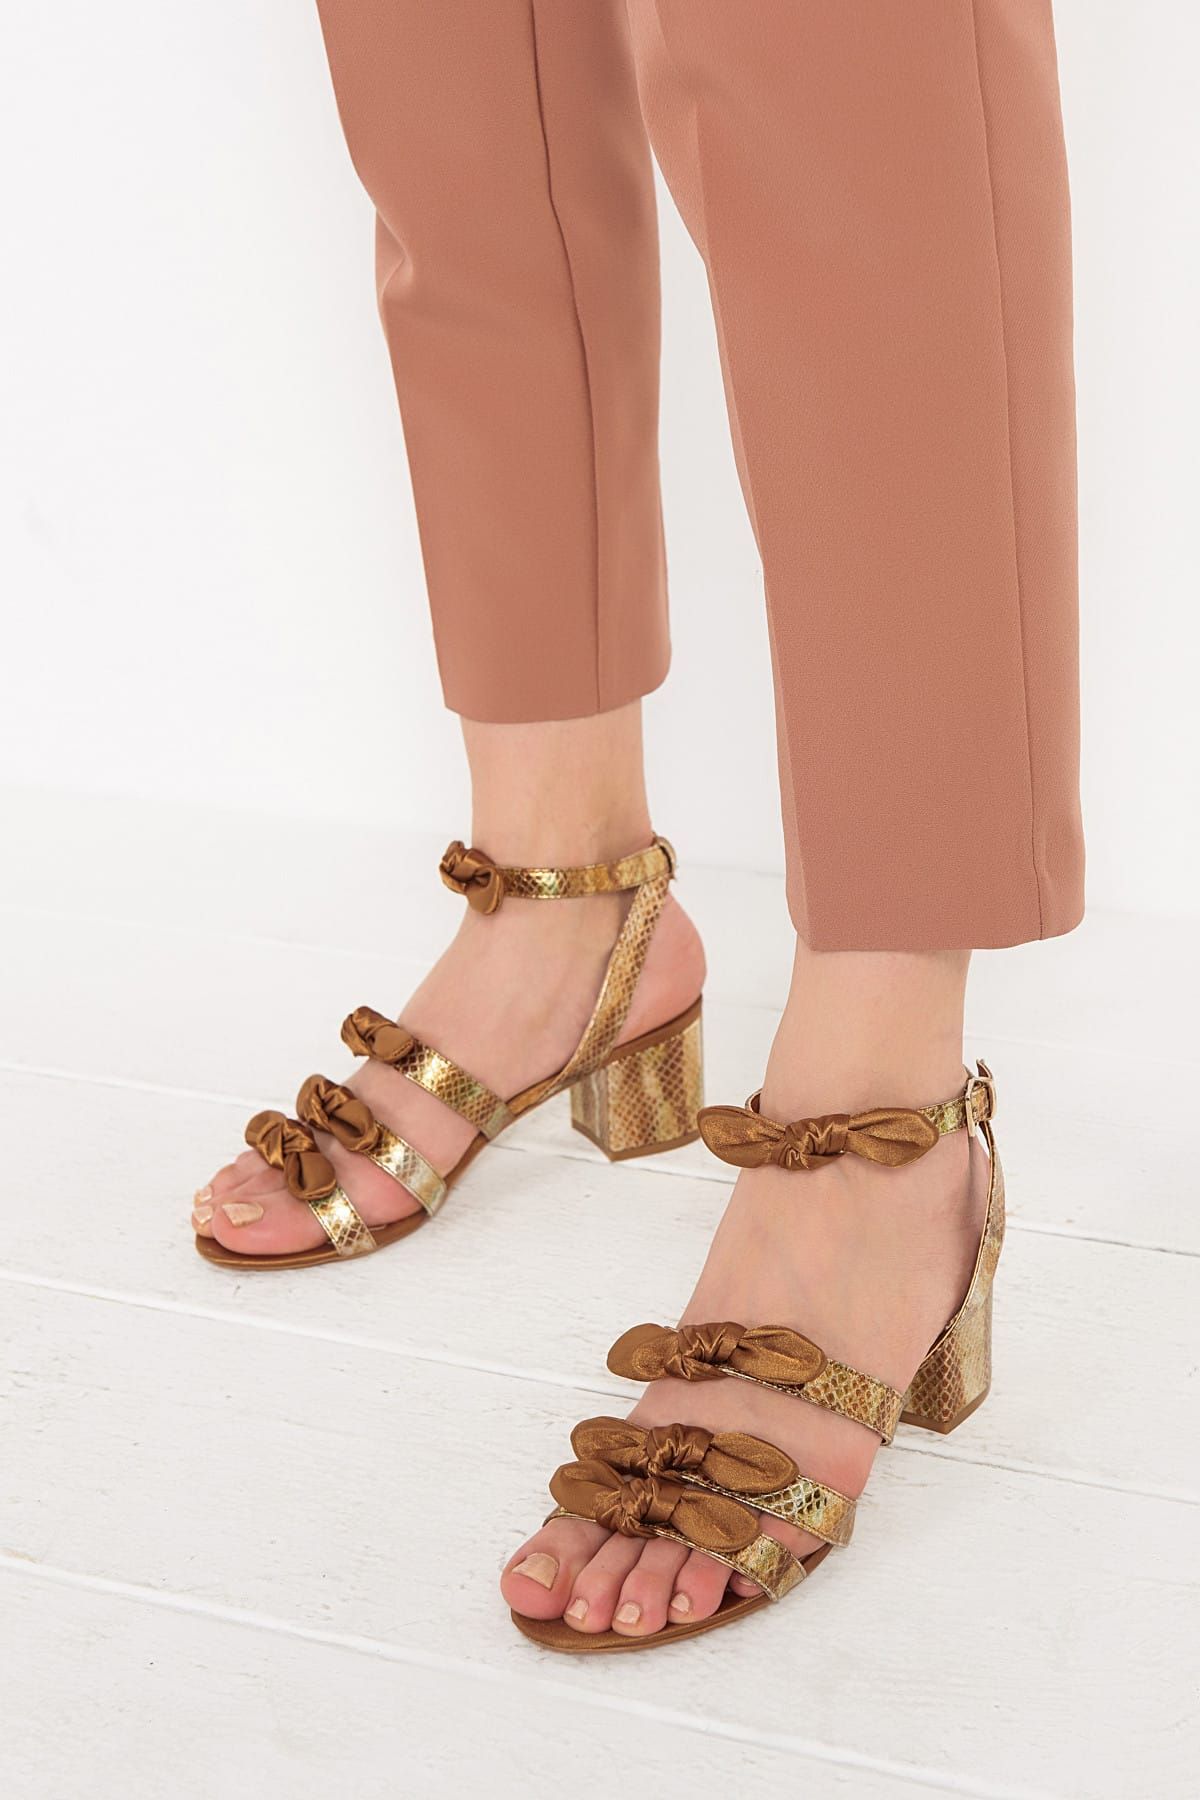 Elle DOLORESSA Hakiki Deri Bakır Rengi Kadın Topuklu Ayakkabı